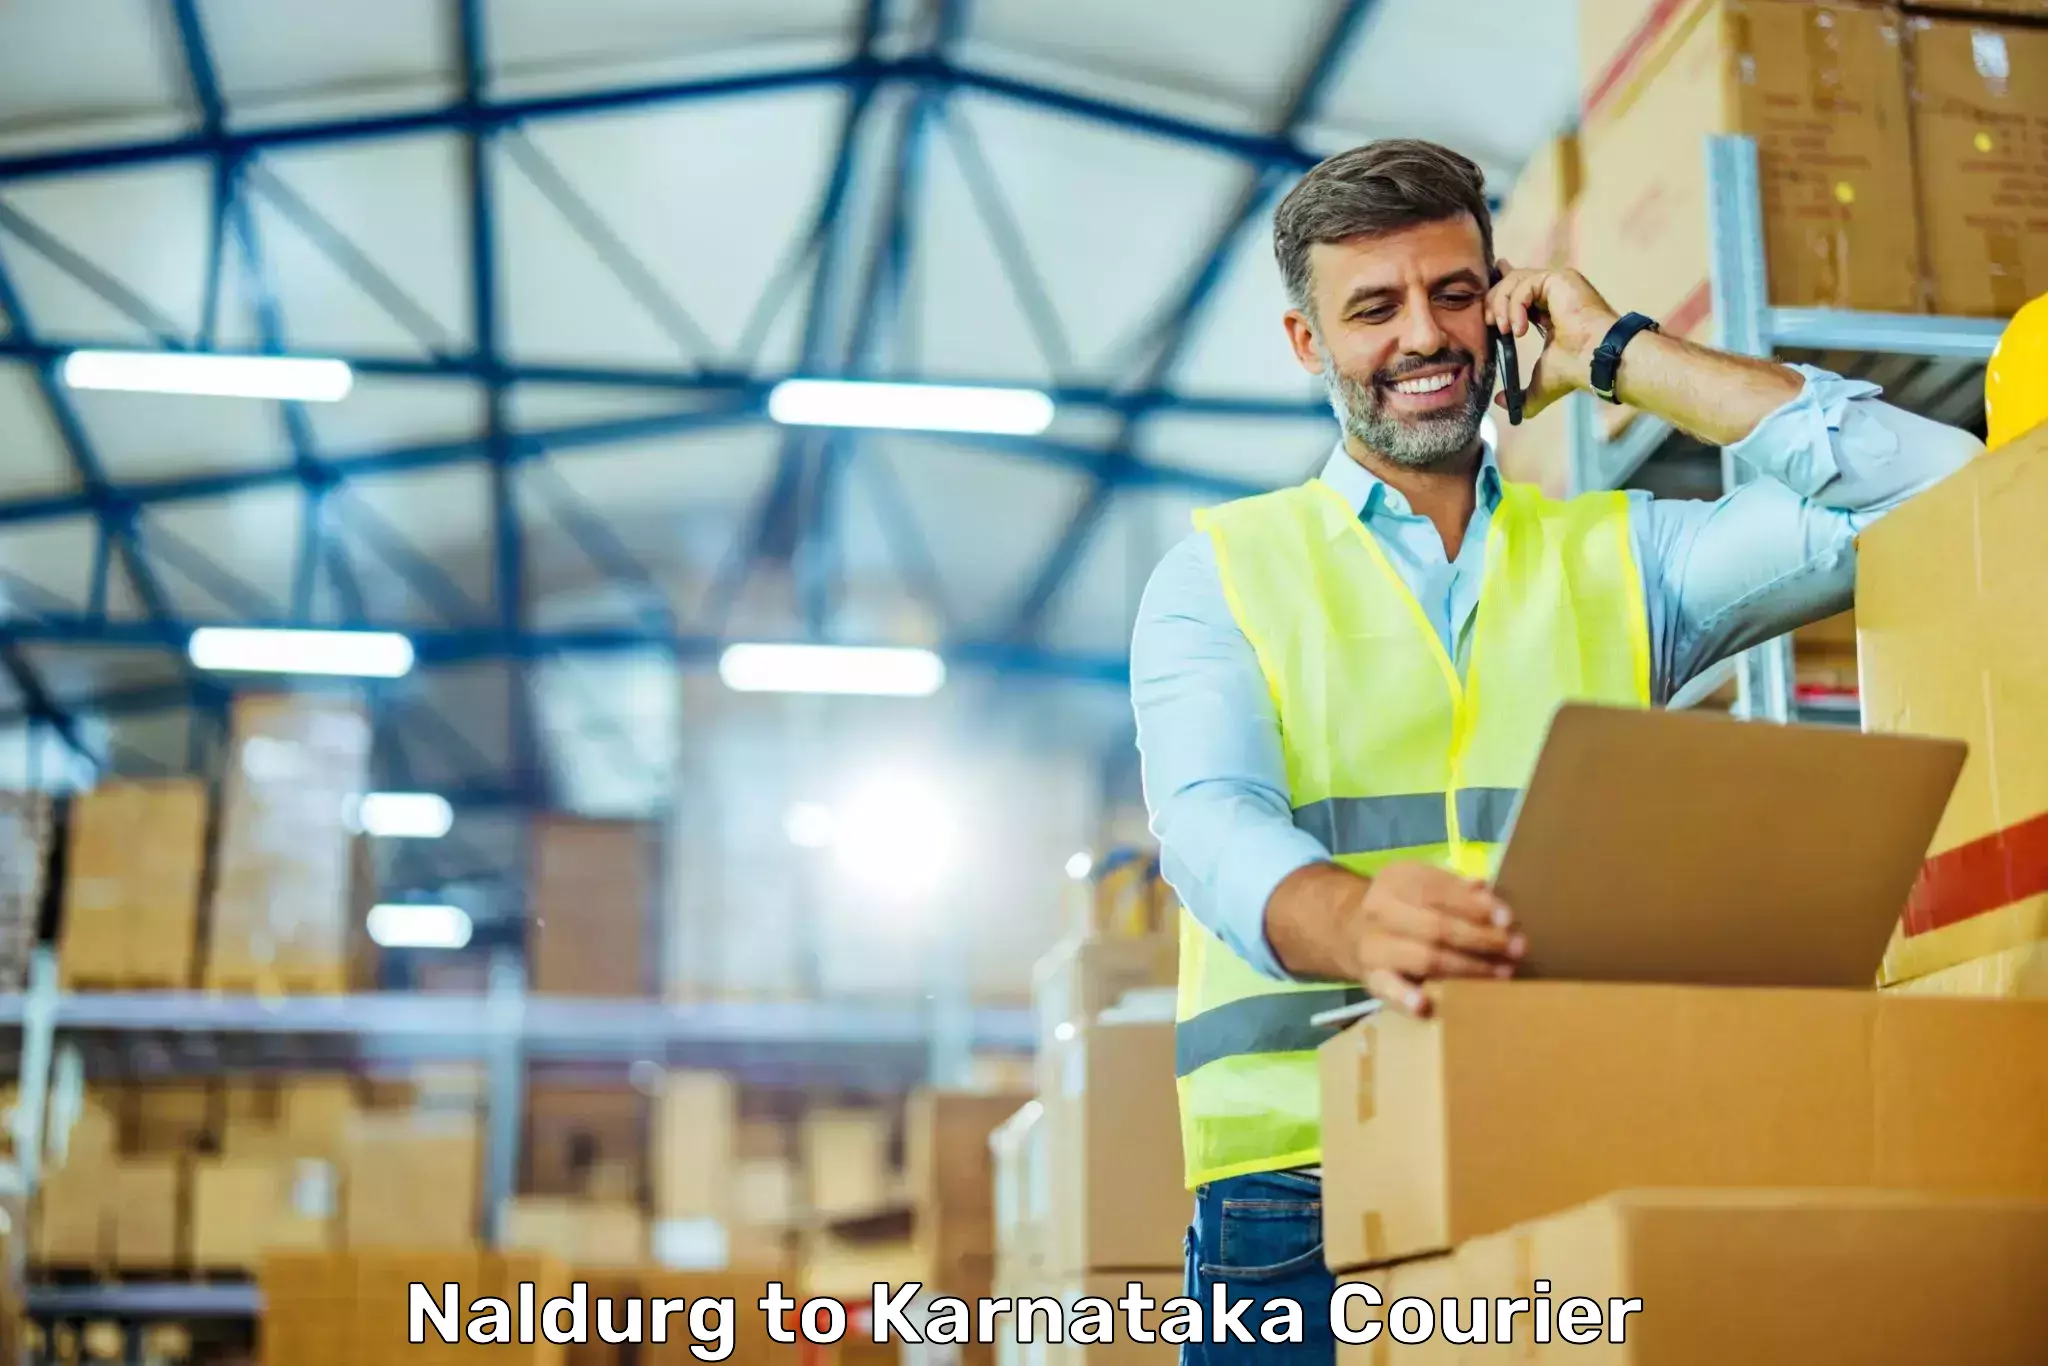 Express shipping Naldurg to Karnataka